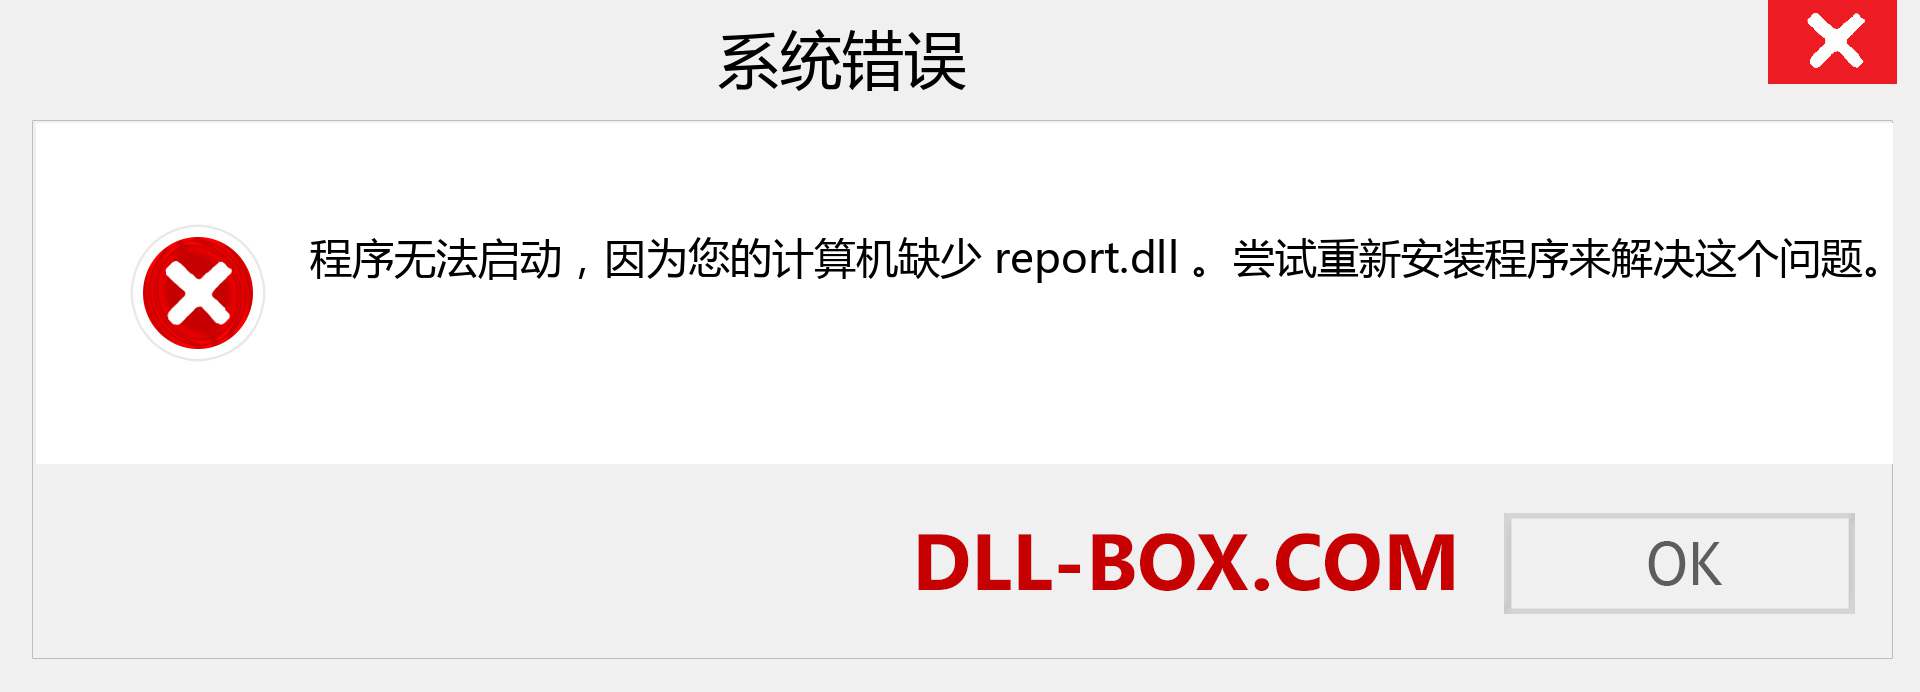 report.dll 文件丢失？。 适用于 Windows 7、8、10 的下载 - 修复 Windows、照片、图像上的 report dll 丢失错误